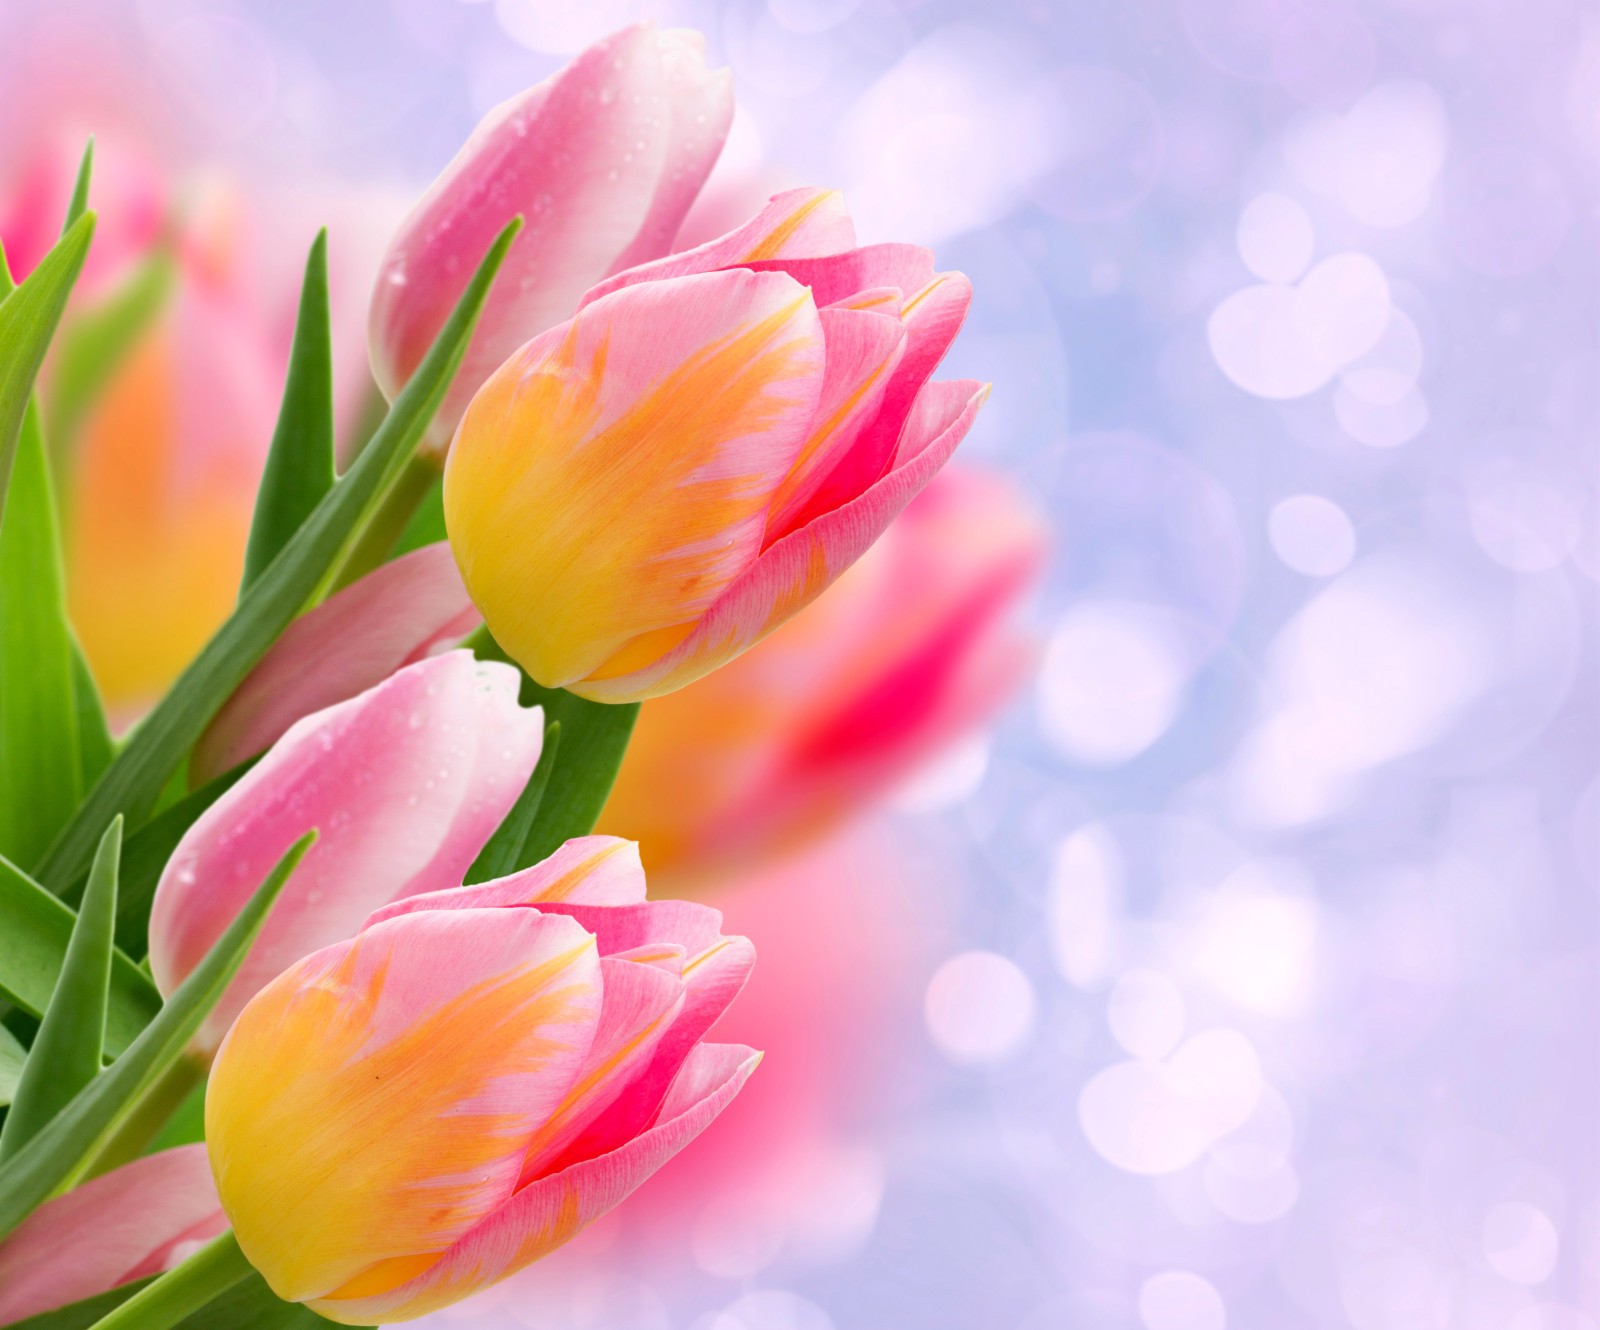 lườm, Bo mạch, lá, Hoa tulip, chồi, chụp gần